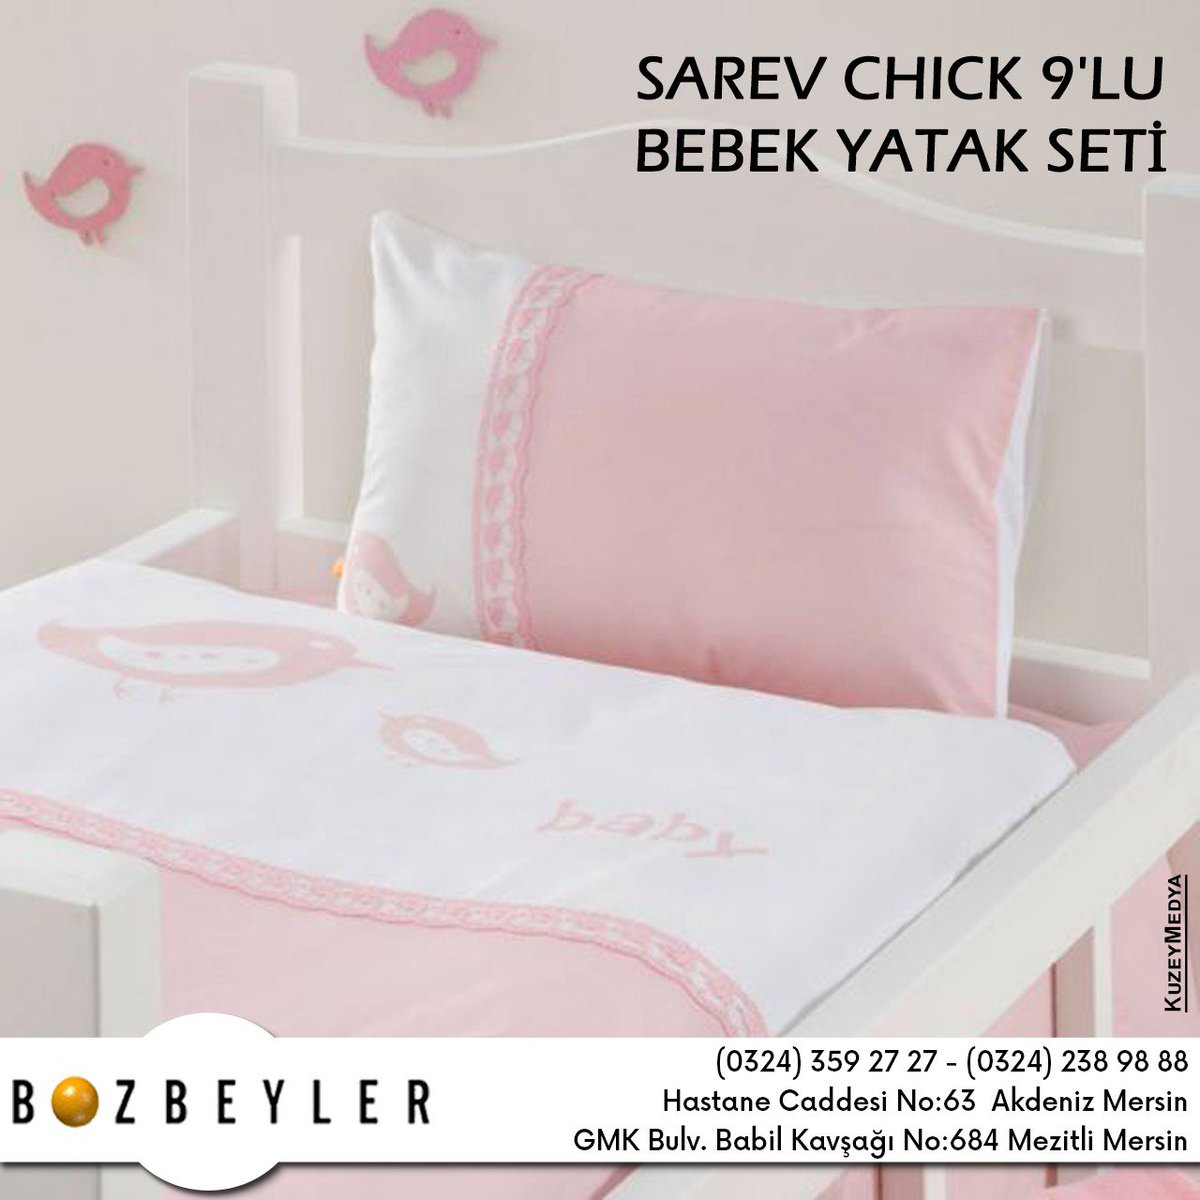 Bebeğinizin uykusuna ve rüyalarına eşlik edecek Sarev Chick yatak seti 249.90 TL'lik fiyatıyla Bozbeyler mağazasında
#bozbeyler #mersin #sarev #sarevstyle #babys #yatakörtüsü #pink #blue #babysleep #sleep #kuzeymedya #room #home #room #bozbeylerexclusive